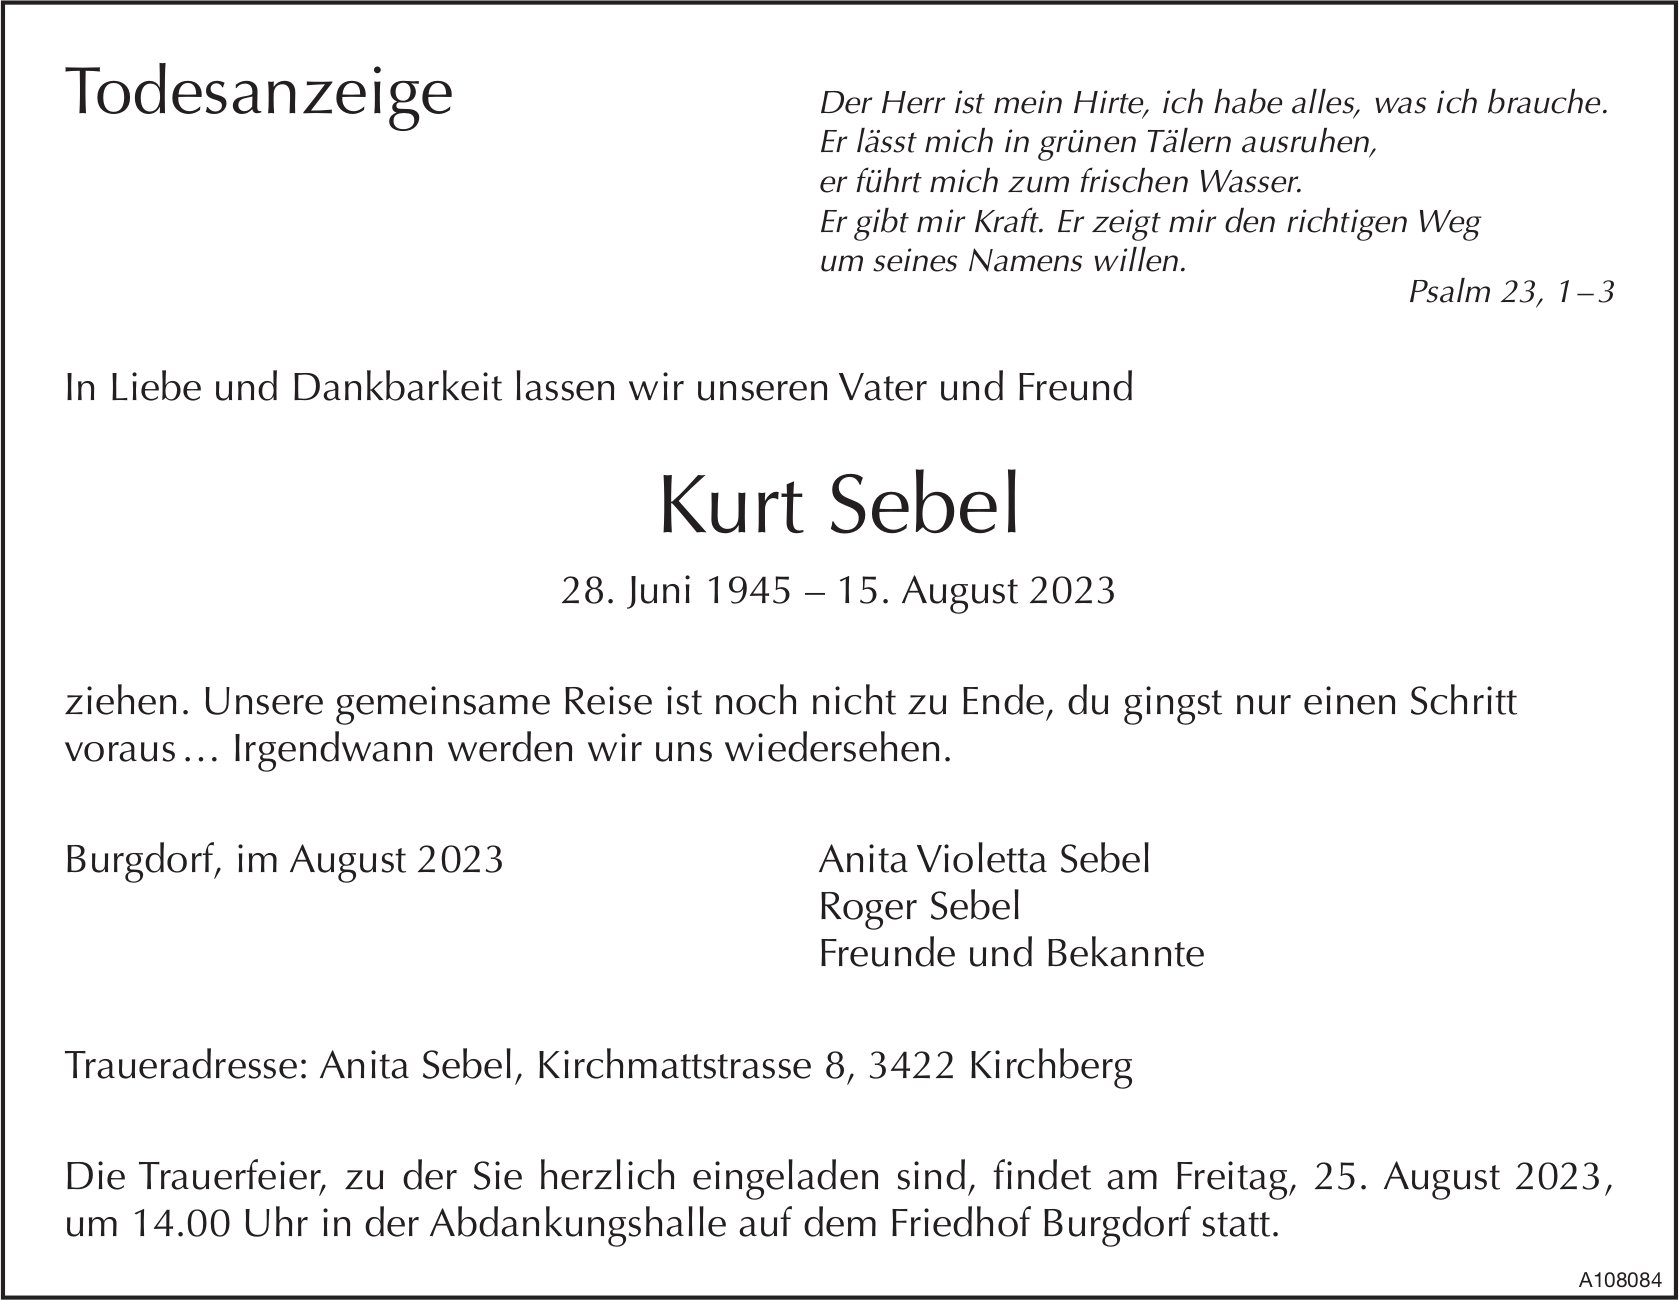 Kurt Sebel, August 2023 / TA